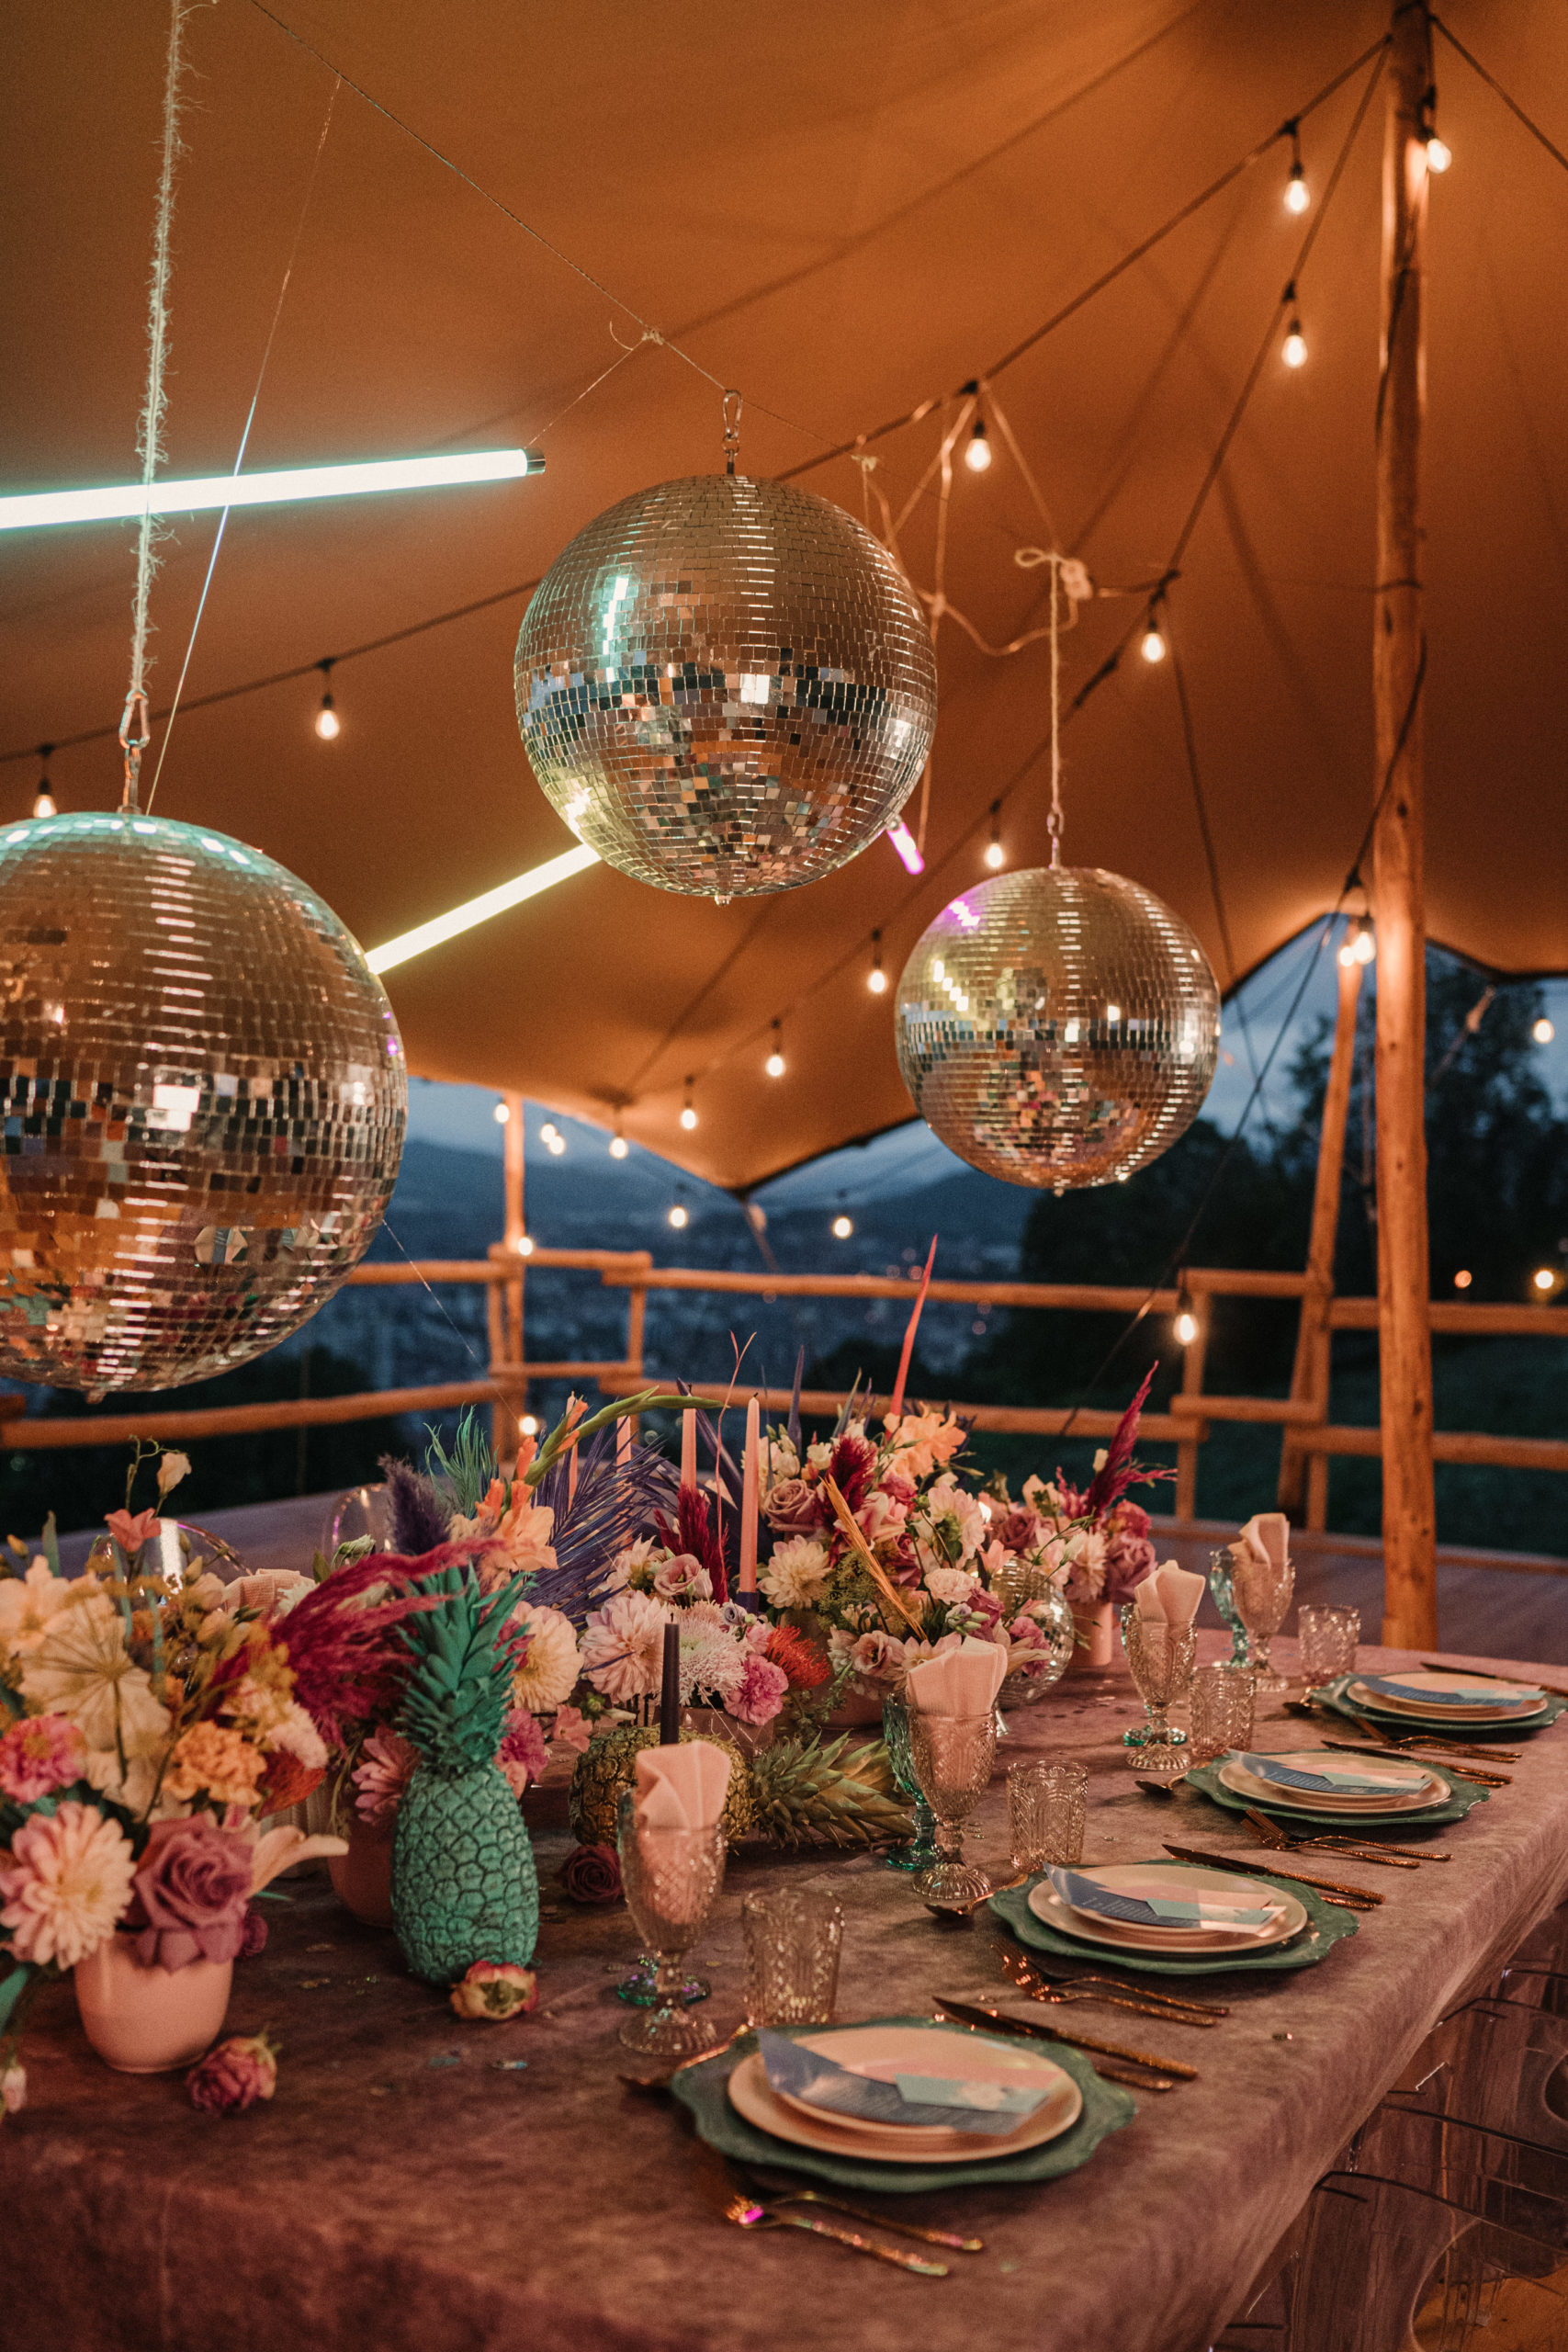 Bolas de discoteca sobre mesa nupcial llena de menaje y decoración colorida